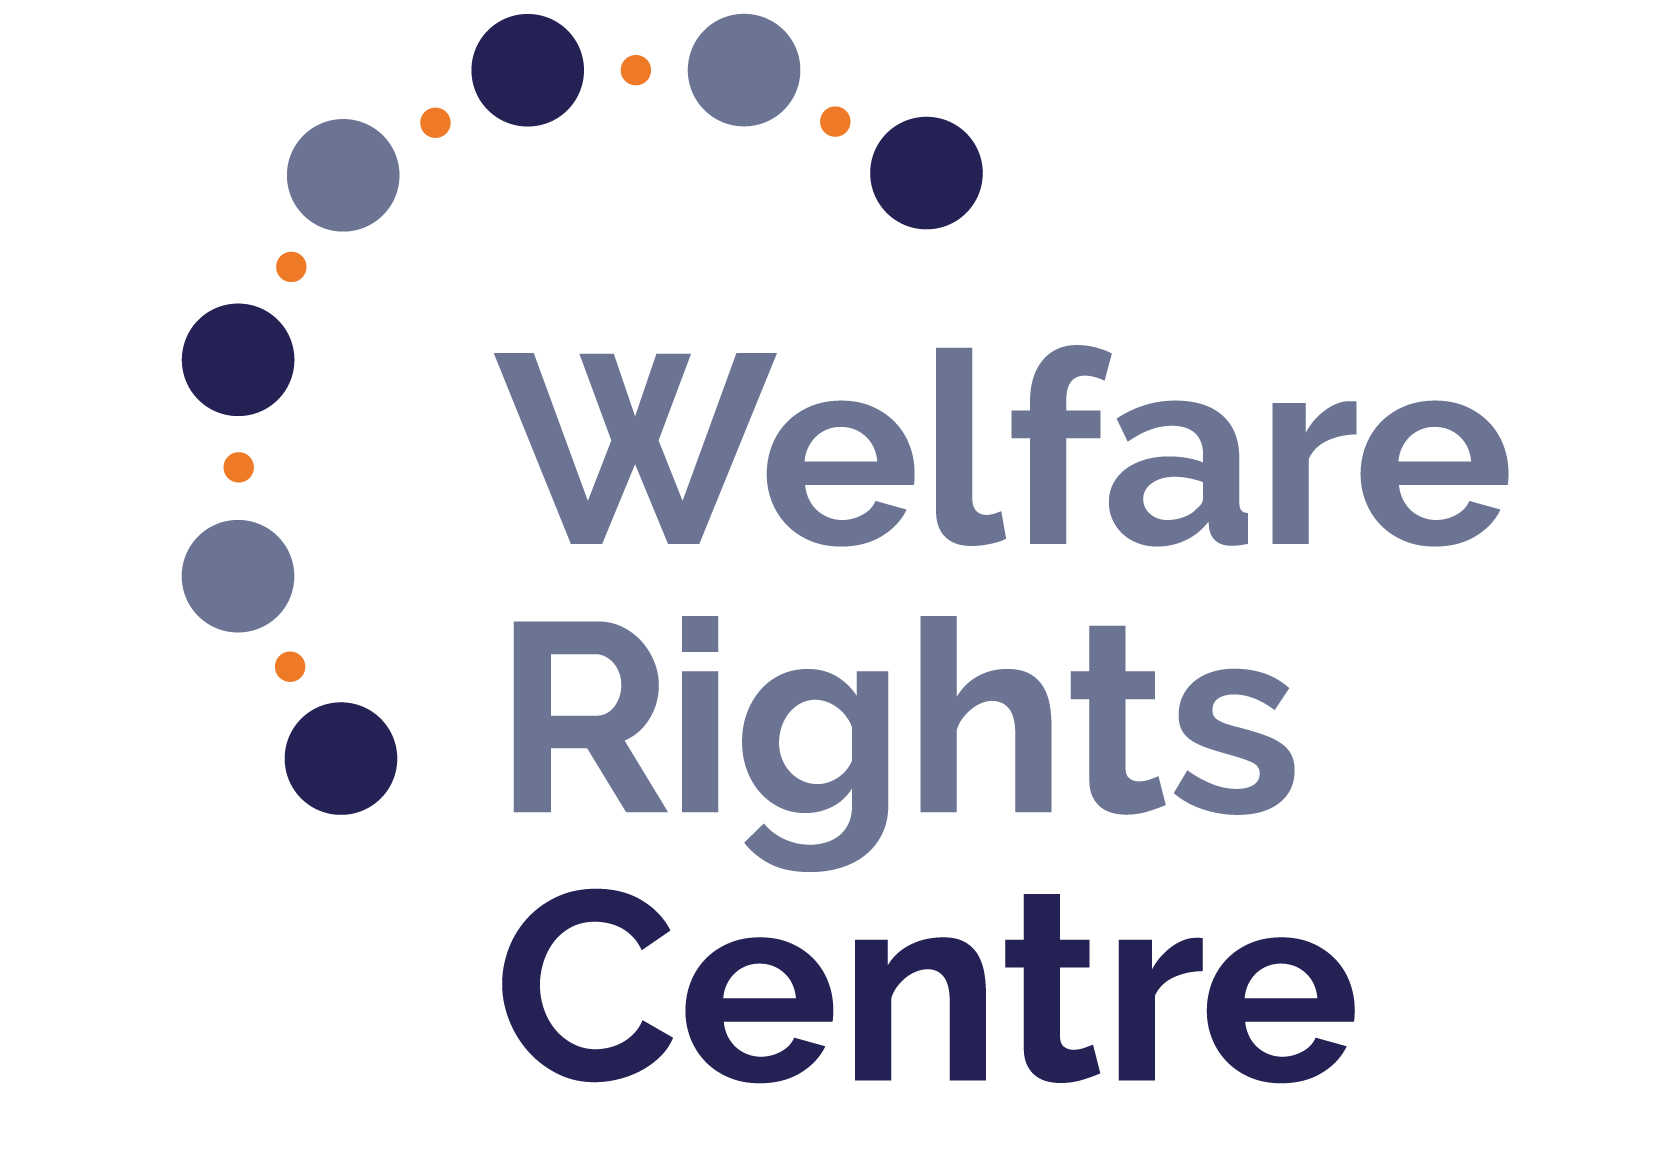 Welfare Rights Centre